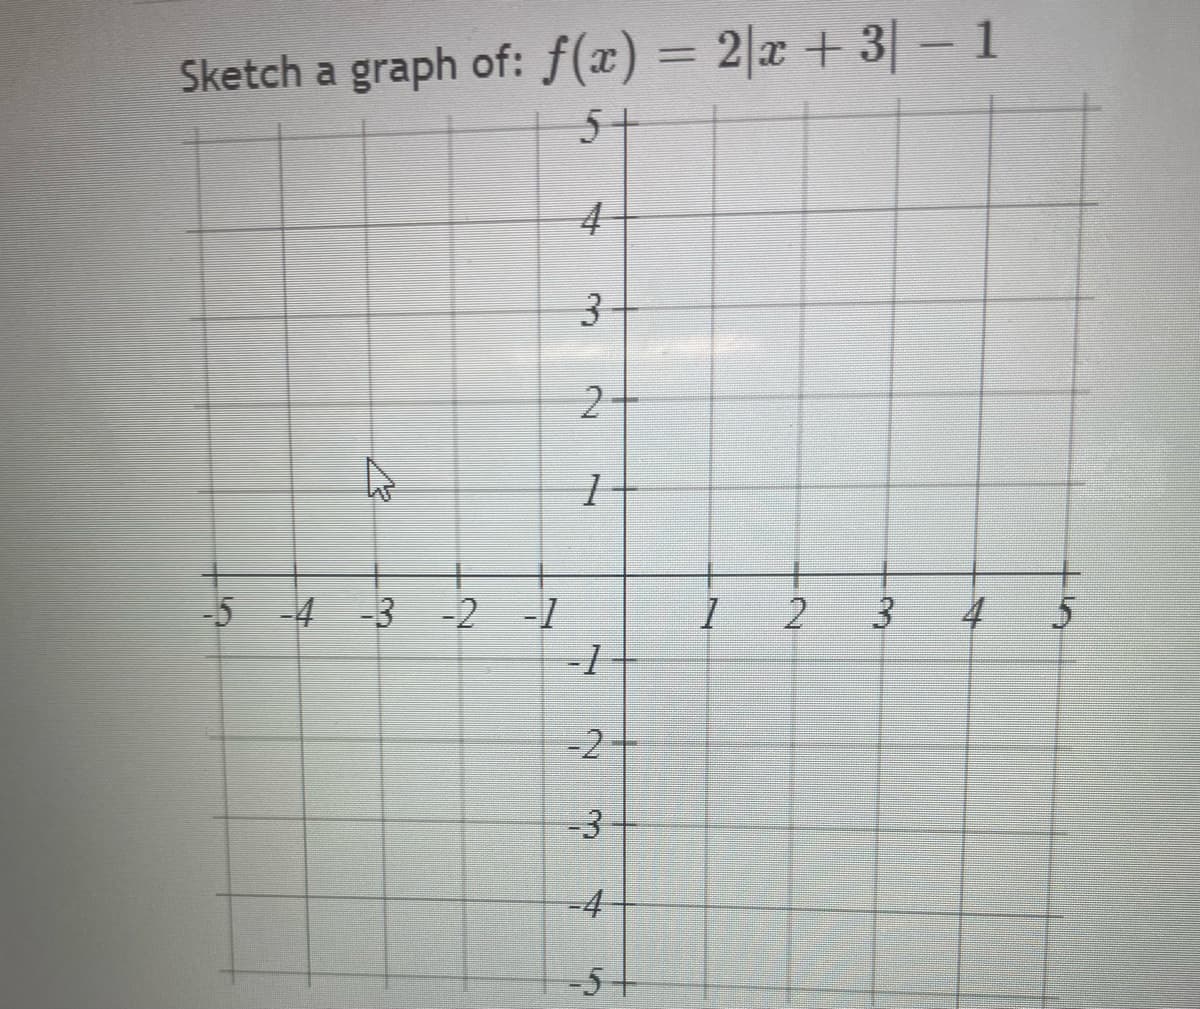 Sketch a graph of: f(x) = 2|x + 3|- 1
5+
%3D
4
-5 -4 -3 -2 -1
4
5
-2
-3-
-4
-5
3.
2.
